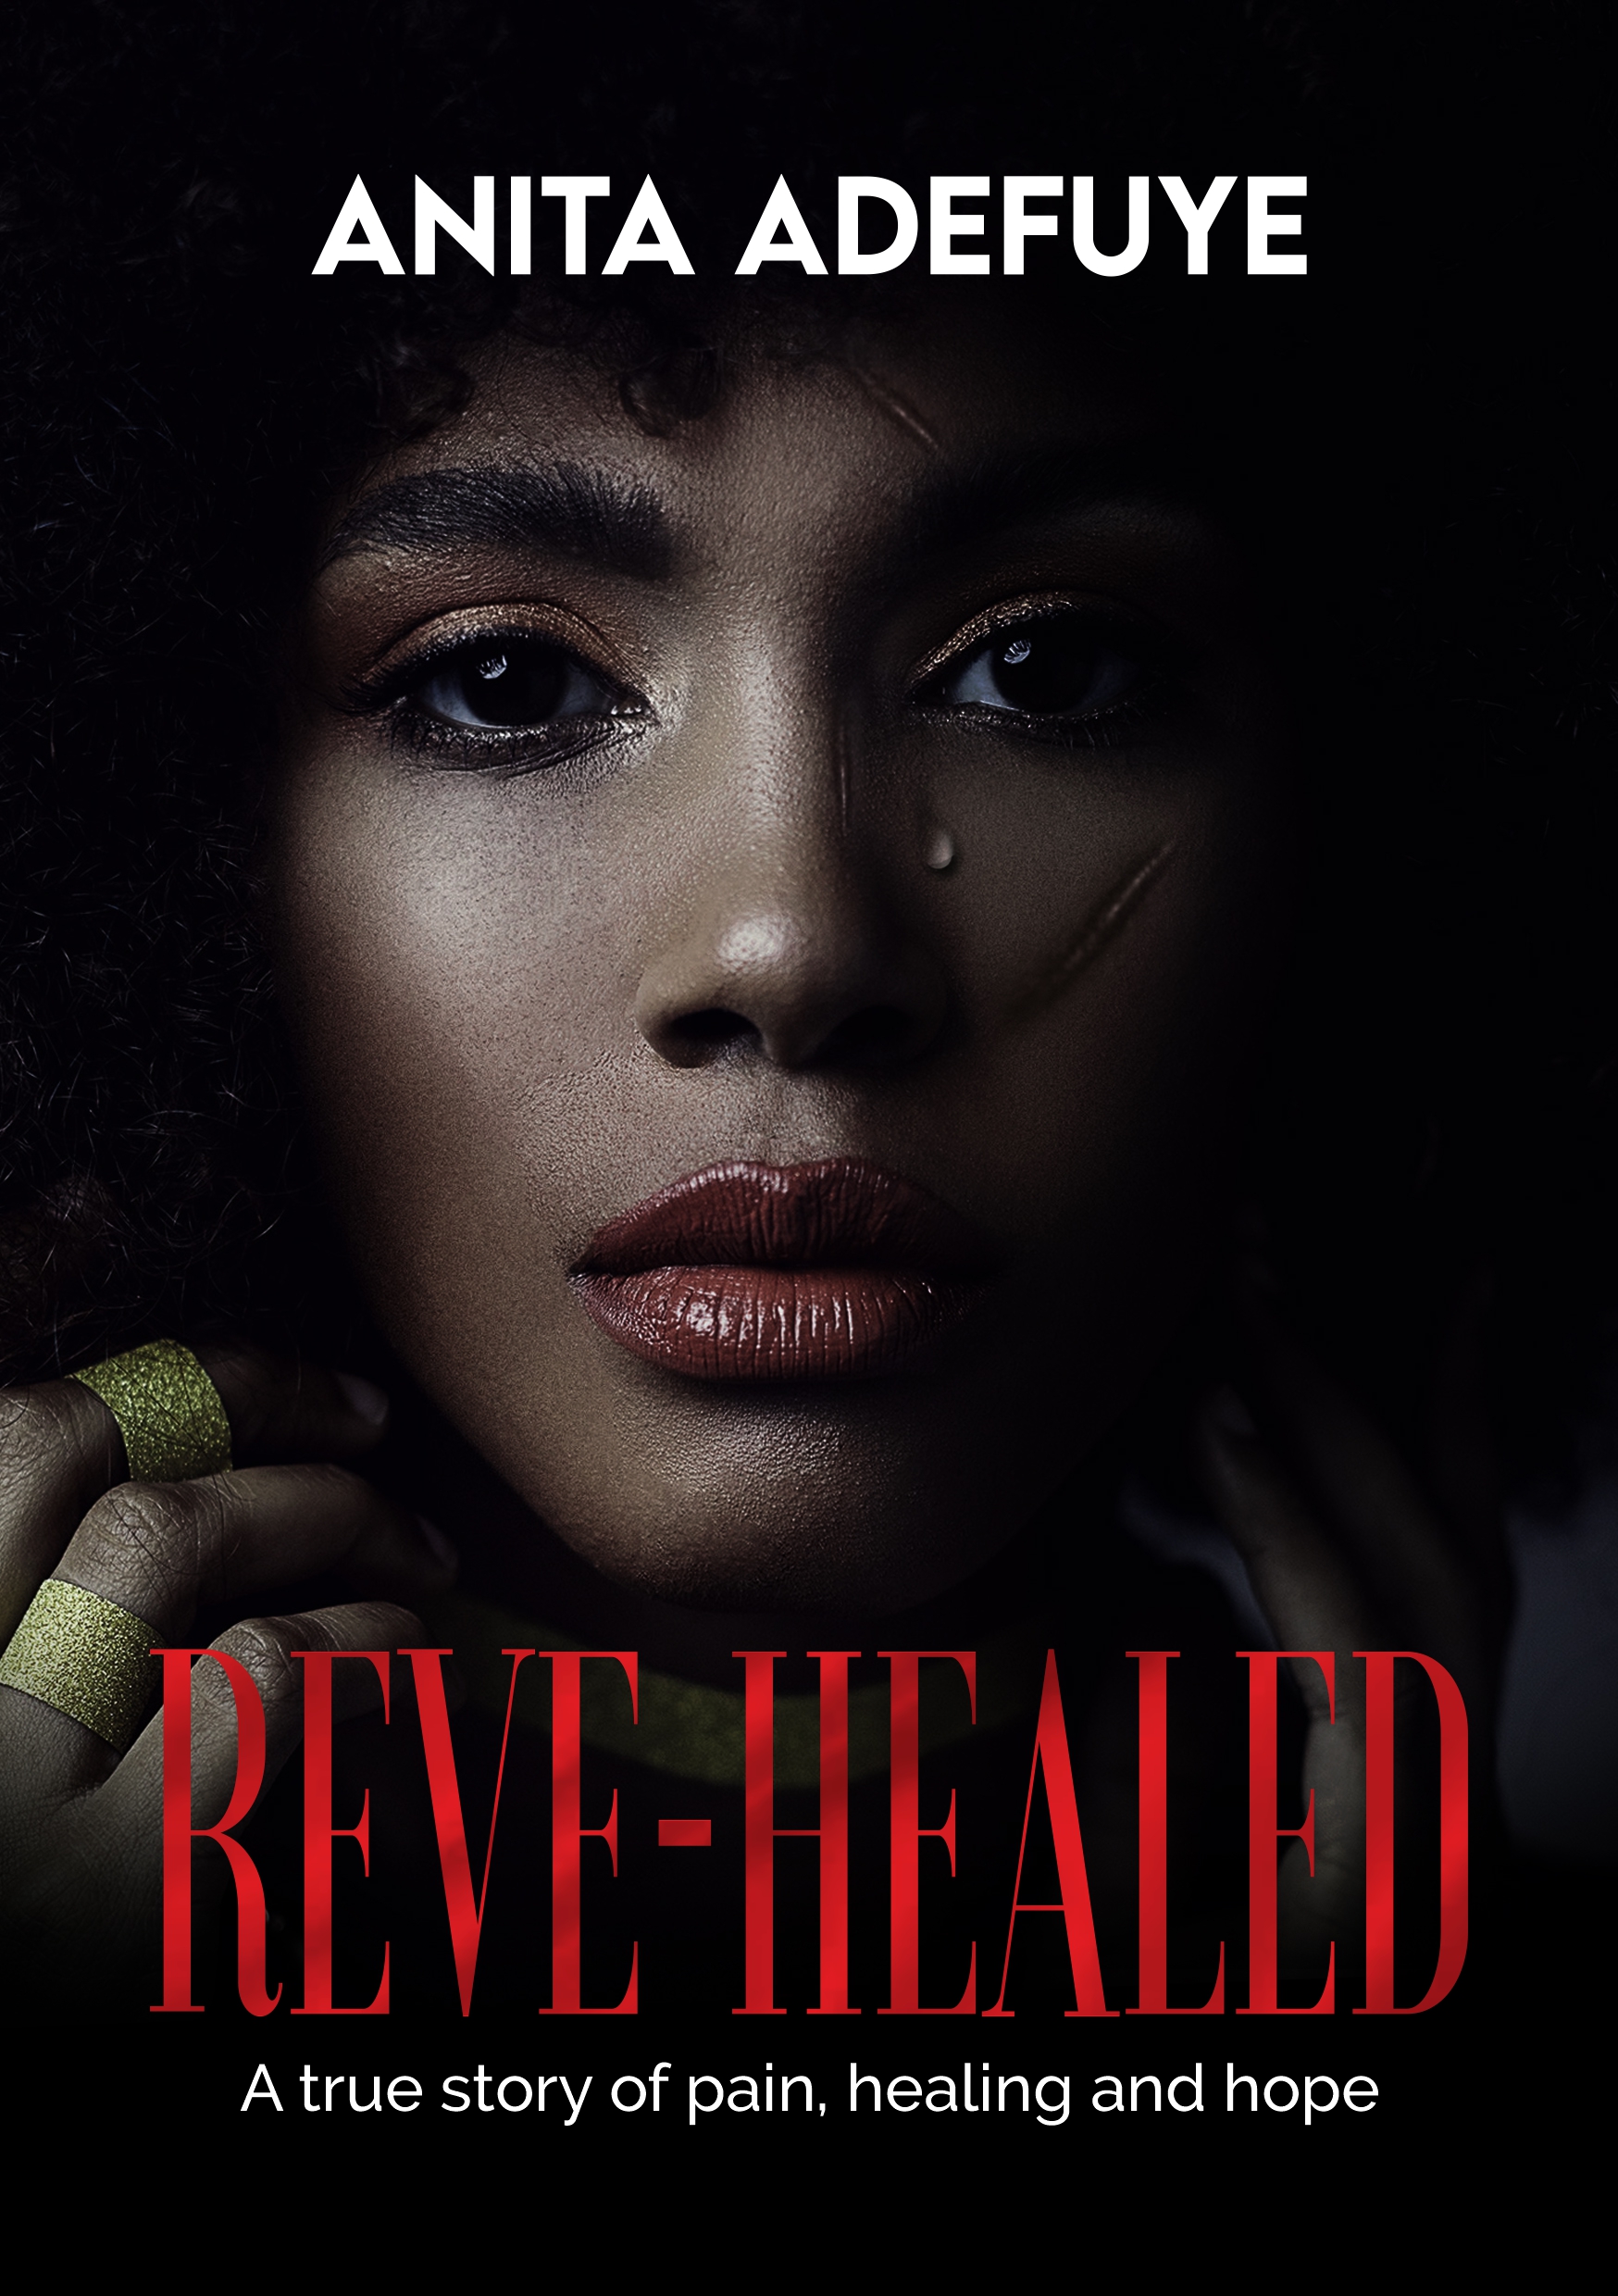 Reve-healed